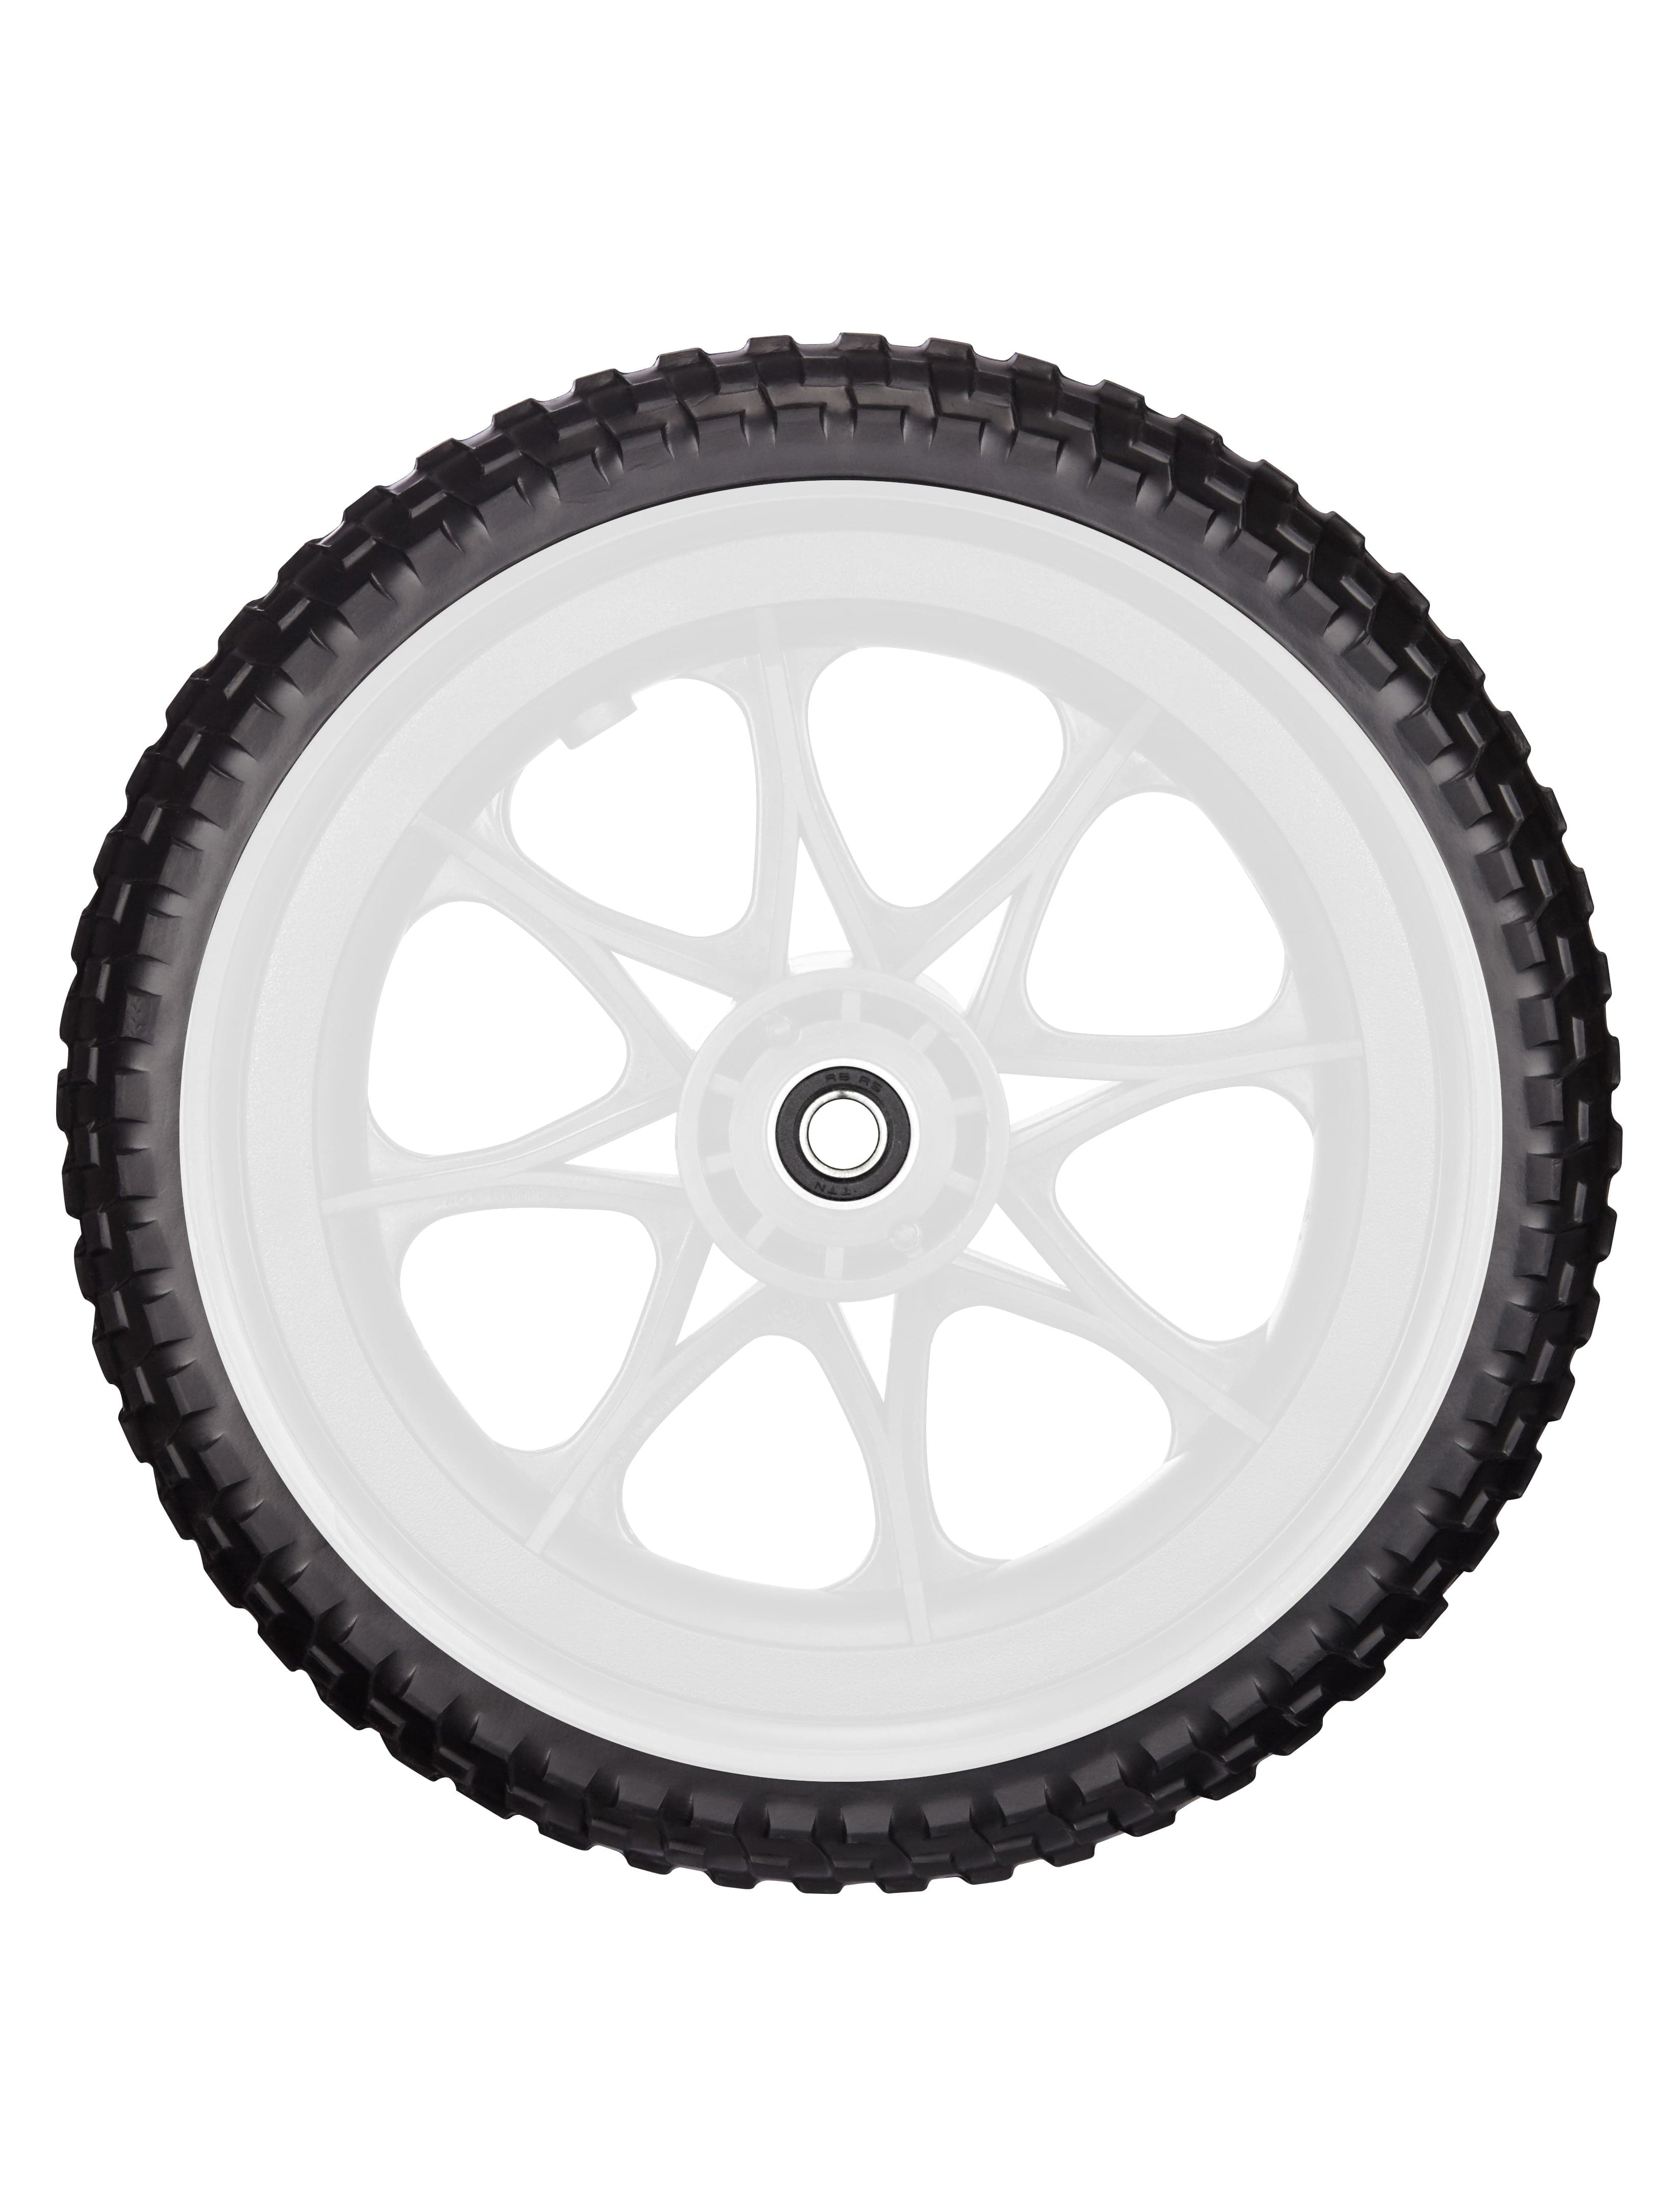 All-Terrain Tubeless Foam Wheel - white